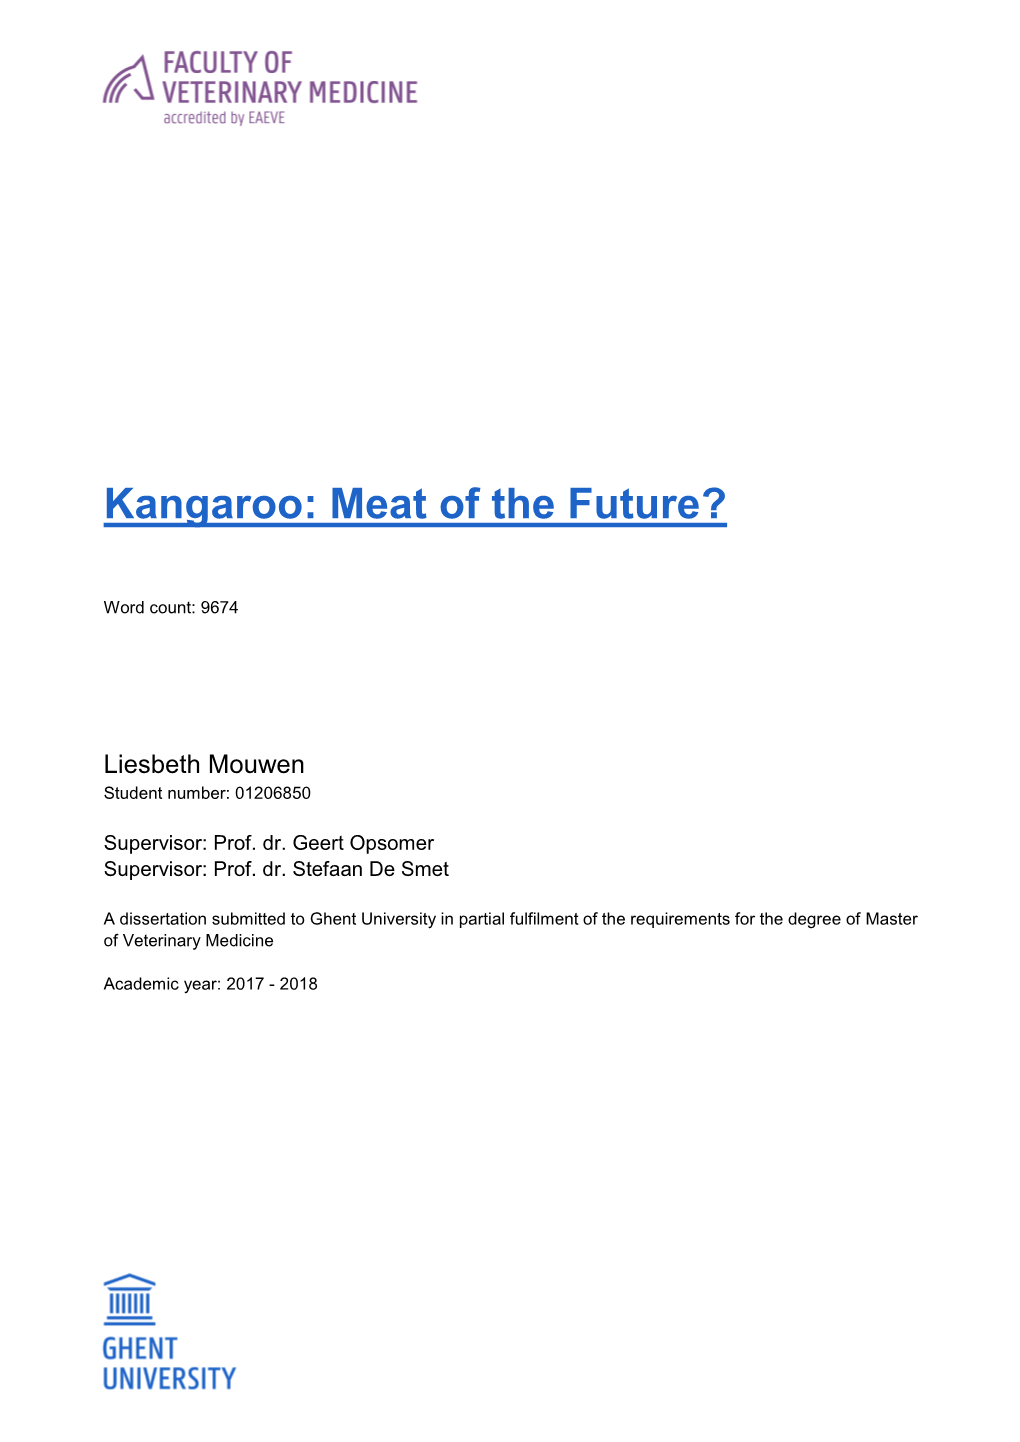 Kangaroo: Meat of the Future?